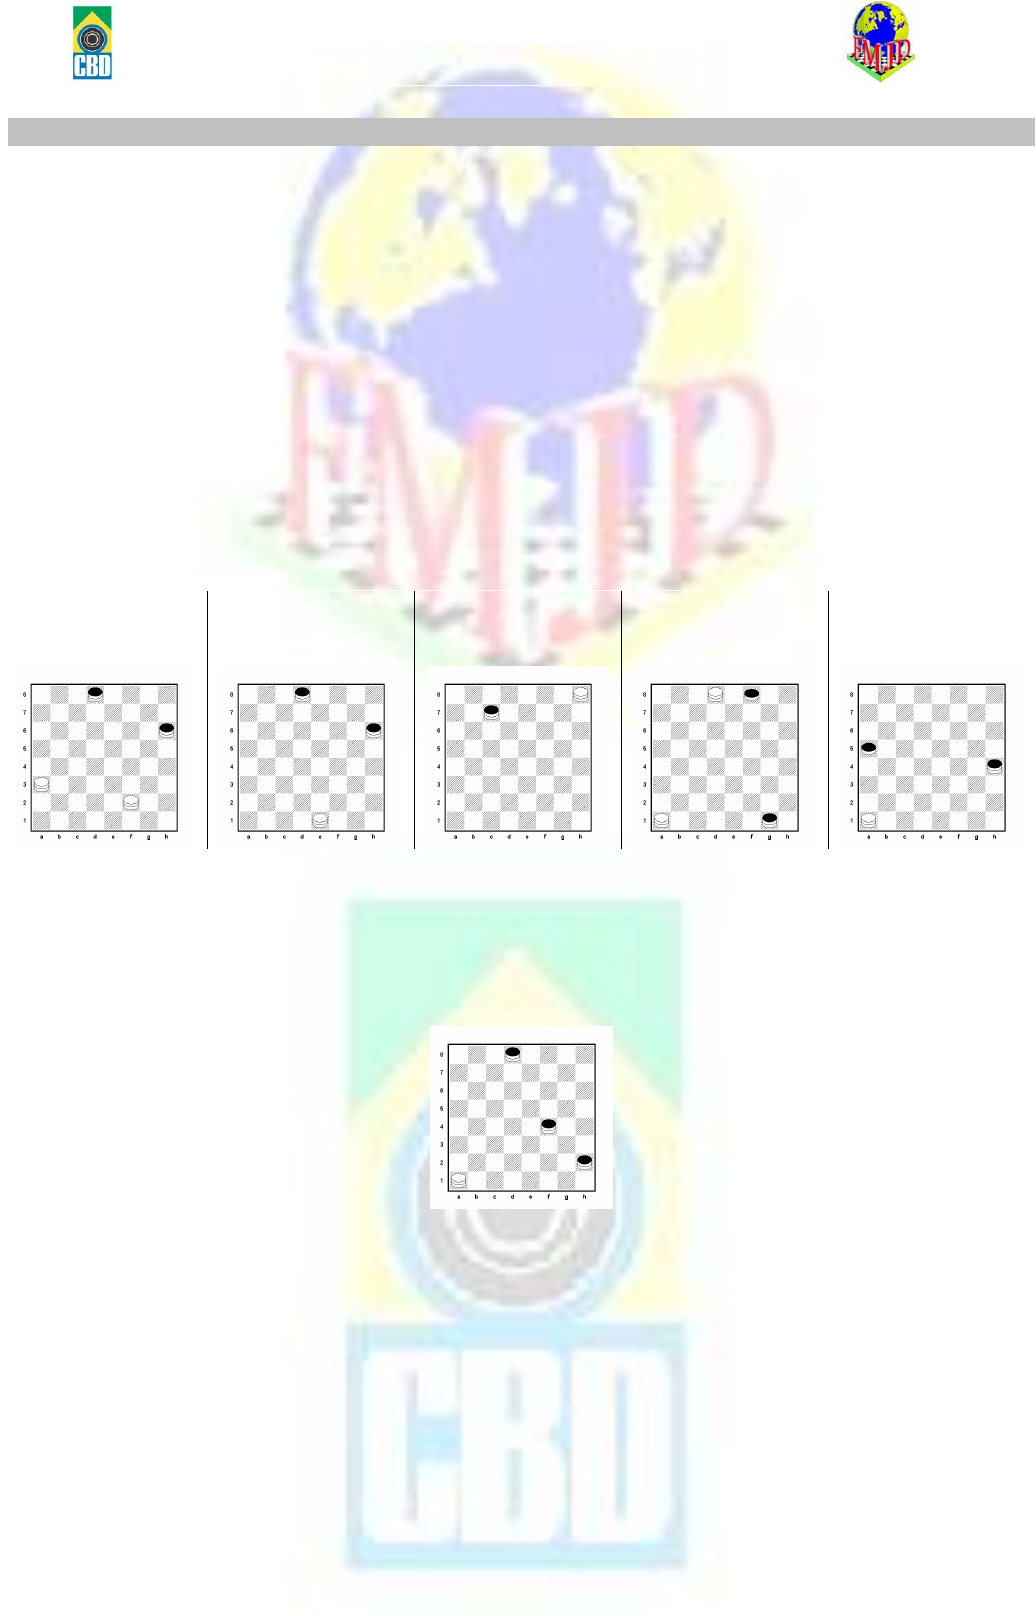 cbjd-regras-damas-010113 - Jogos Matematicos